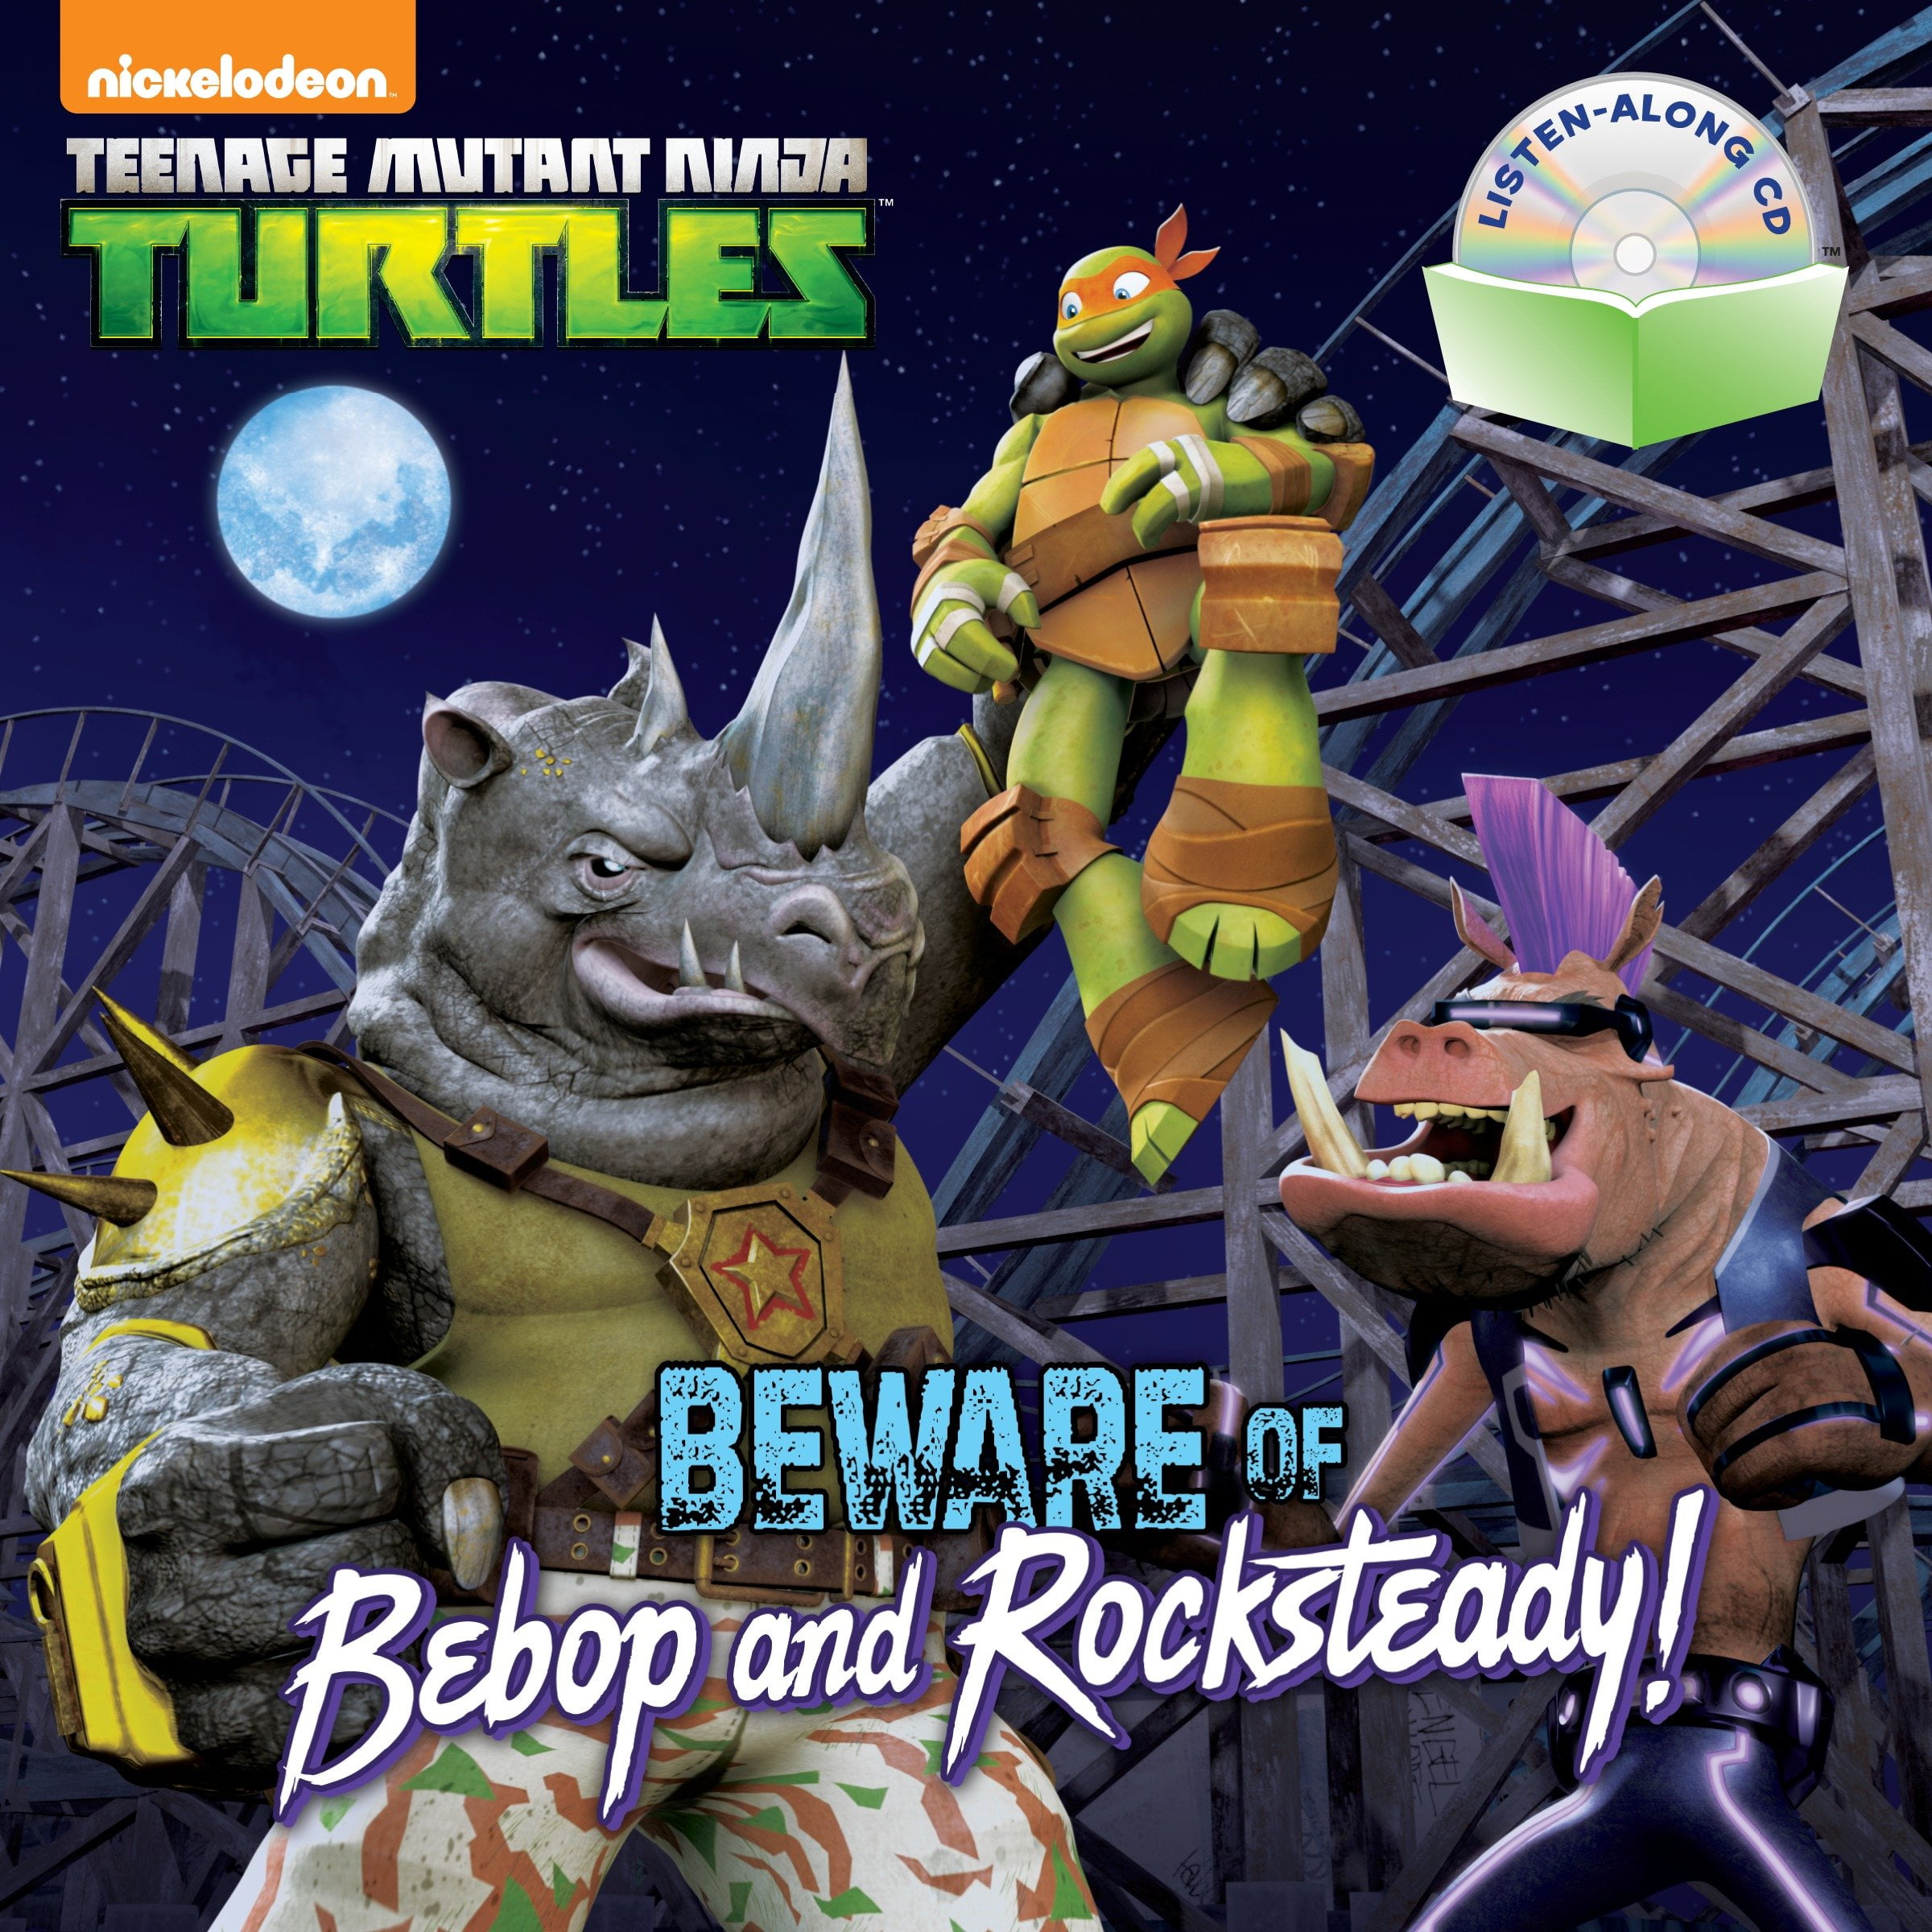 Teenage Mutant Ninja Turtles Storybook Library (Teenage Mutant Ninja Turtles) [eBook]